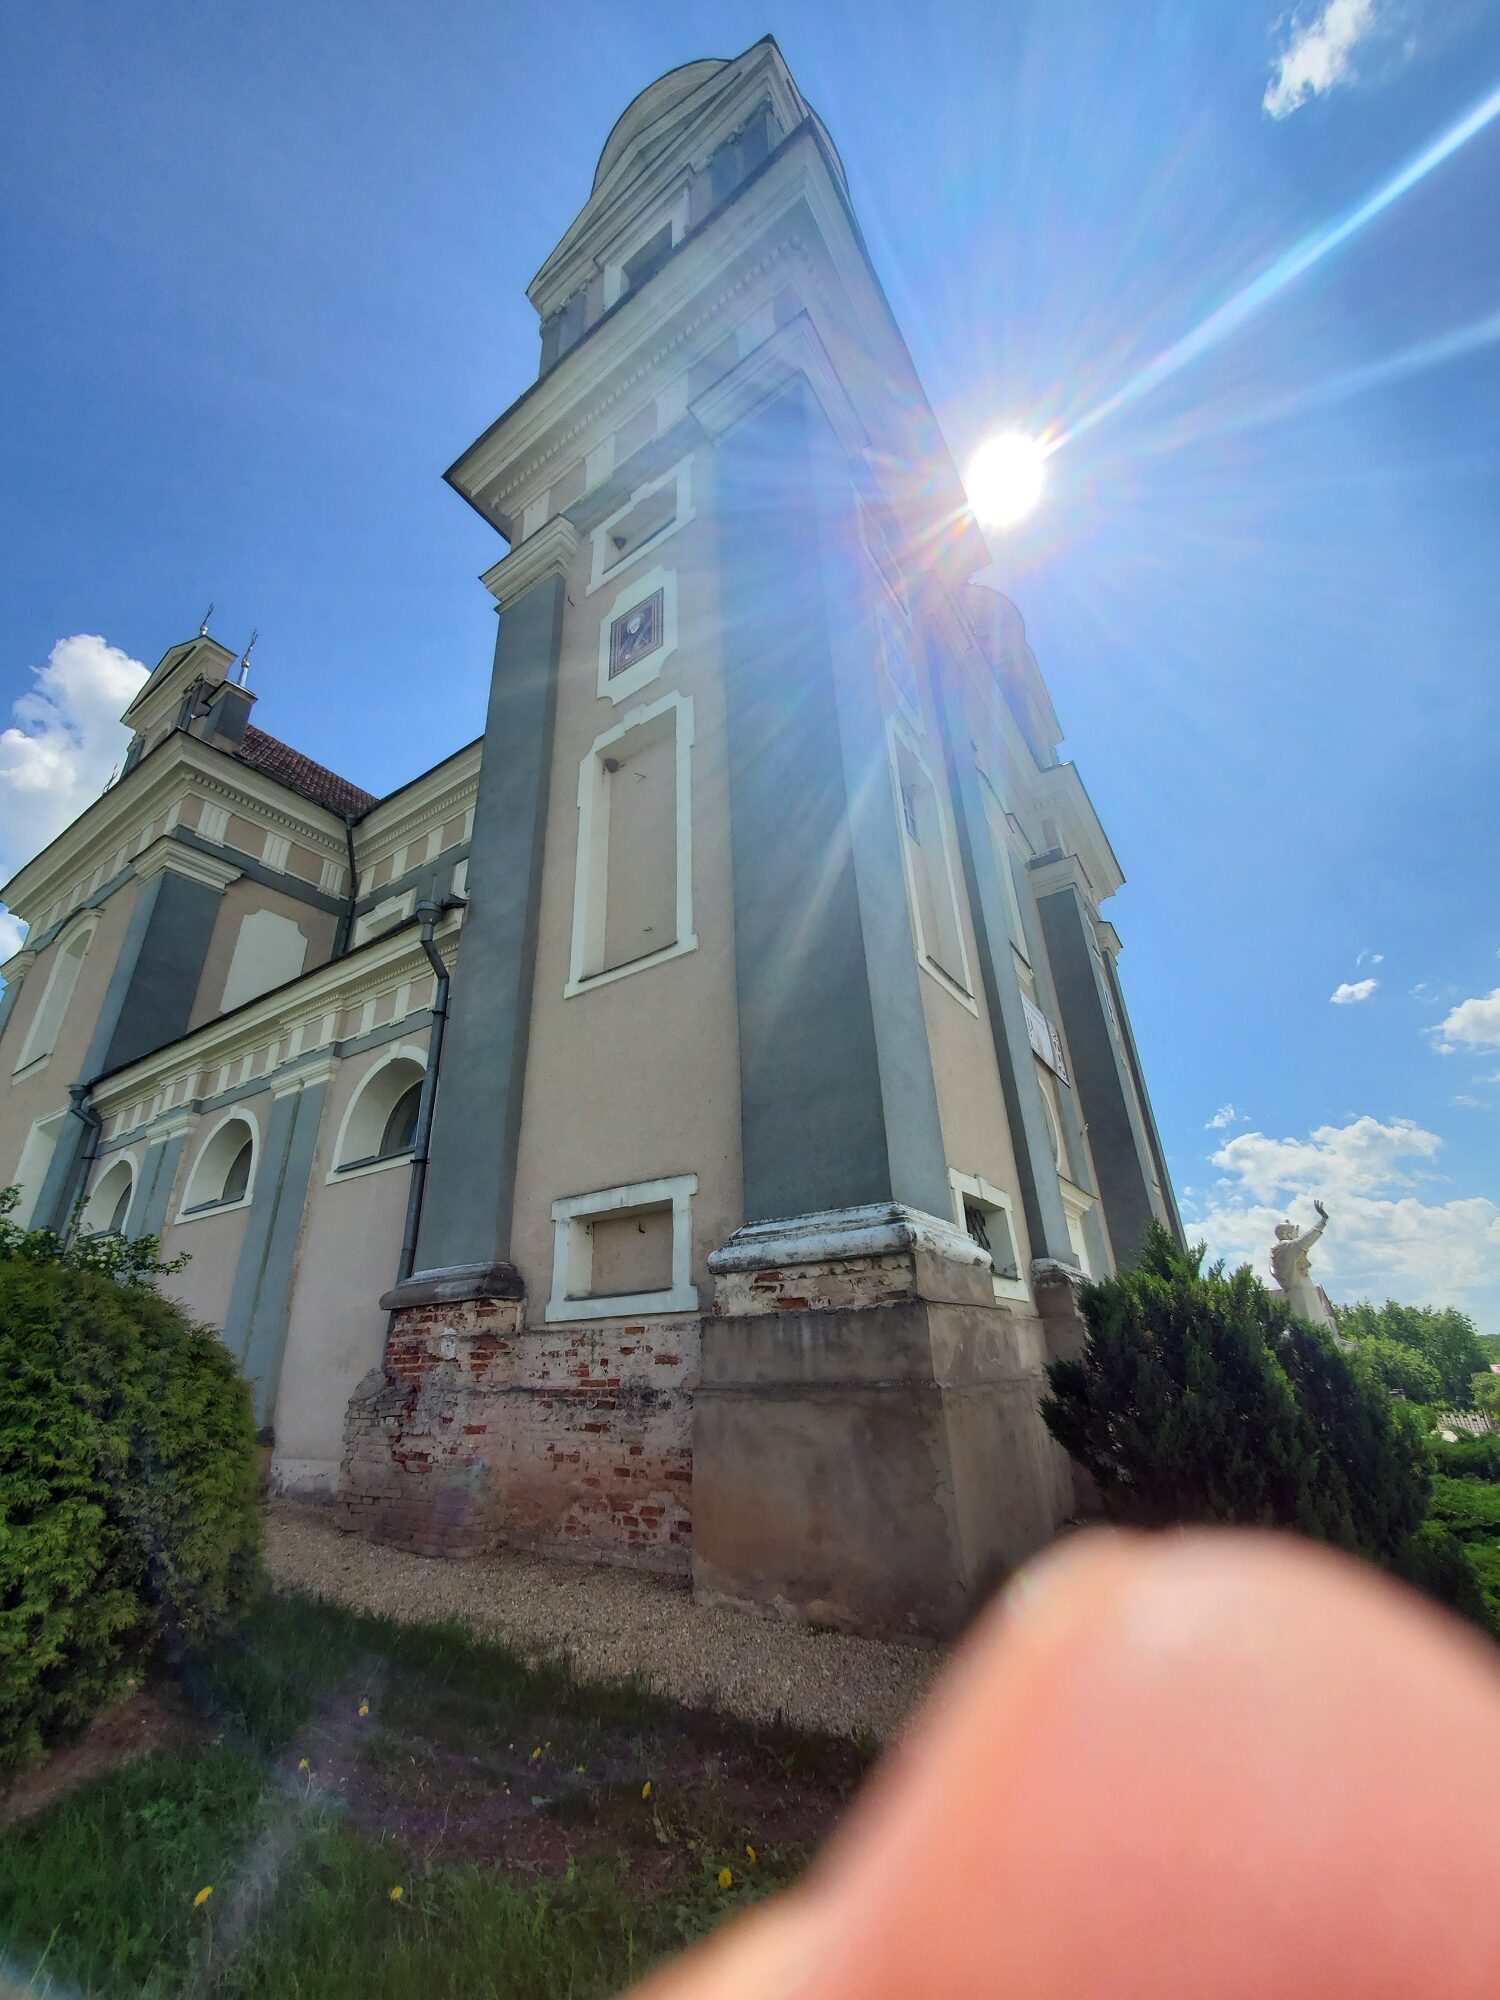 20200606 144118 rotated - Костел Святого Тадеуша в деревне Лучай